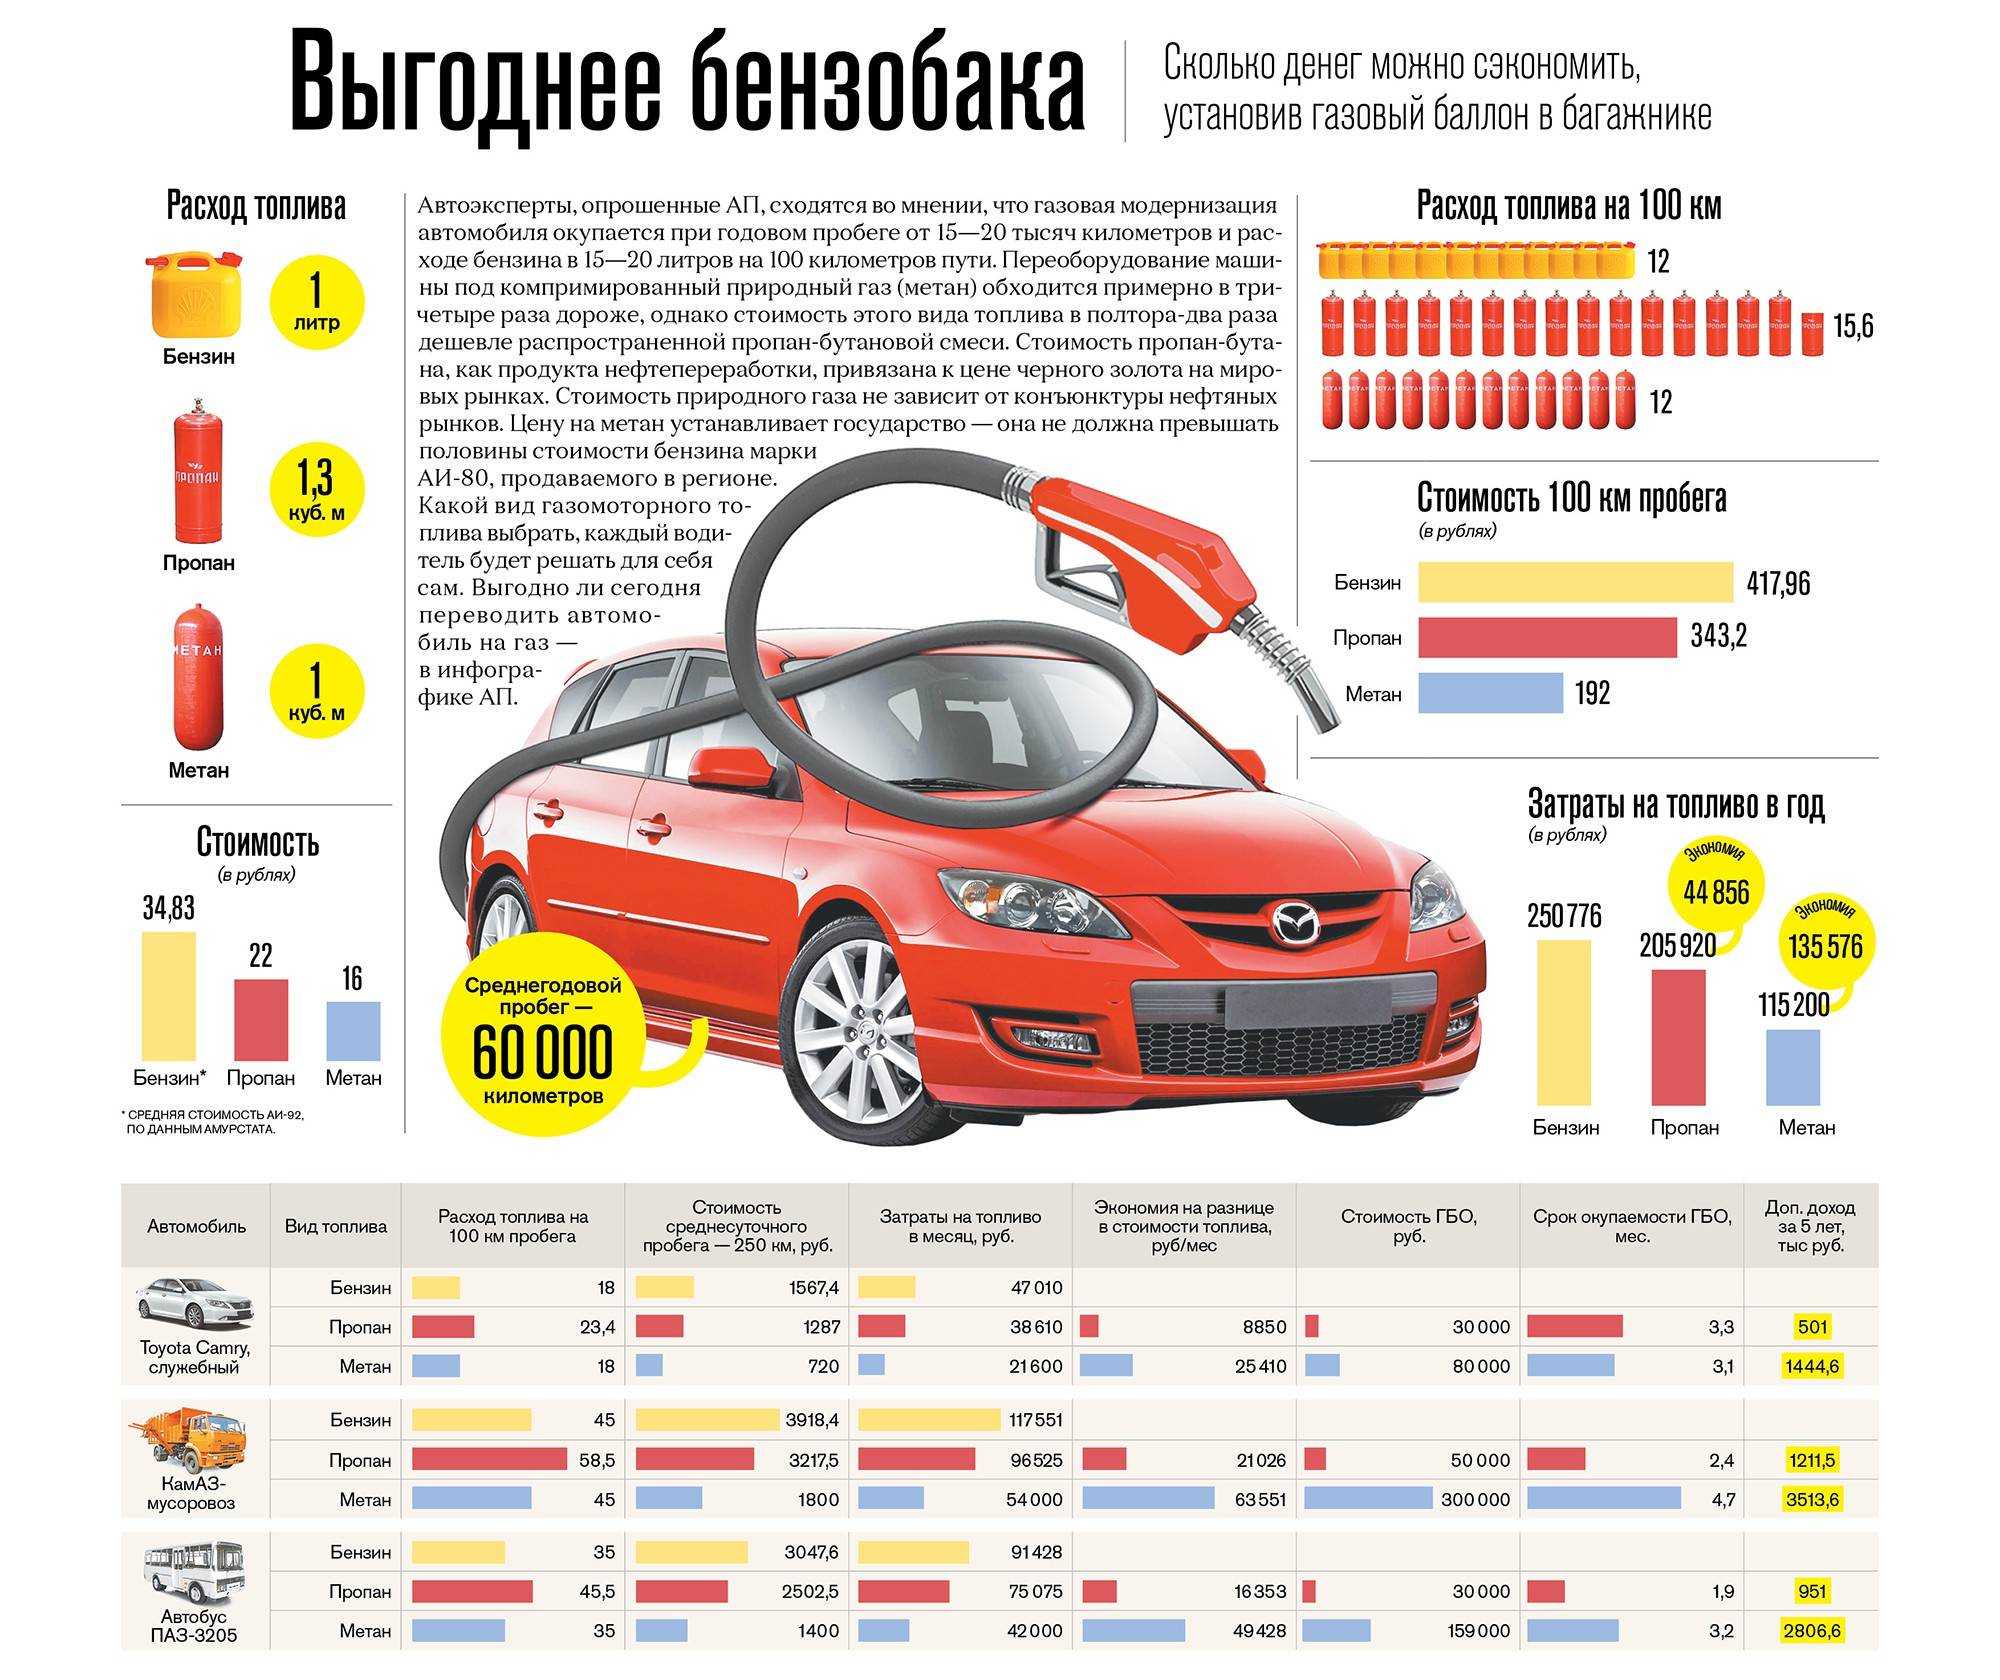 Недорогие малолитражки для женщин. 8 автомобилей до 200 тысяч рублей